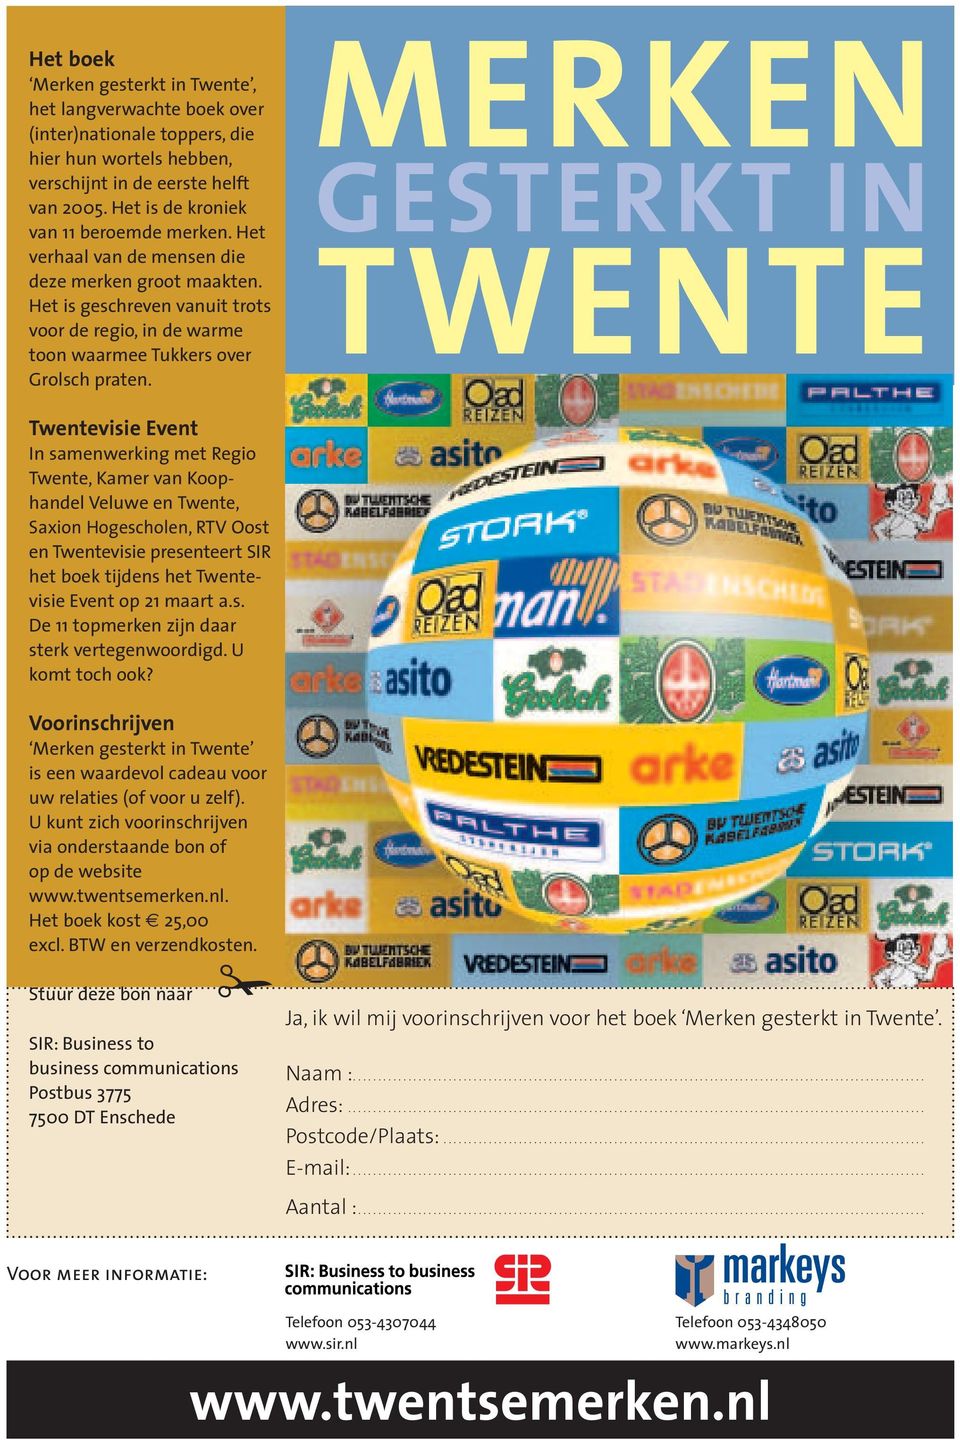 Twentevisie Event In samenwerking met Regio Twente, Kamer van Koop - handel Veluwe en Twente, Saxion Hoge scholen, RTV Oost en Twentevisie presenteert SIR het boek tijdens het Twentevisie Event op 21